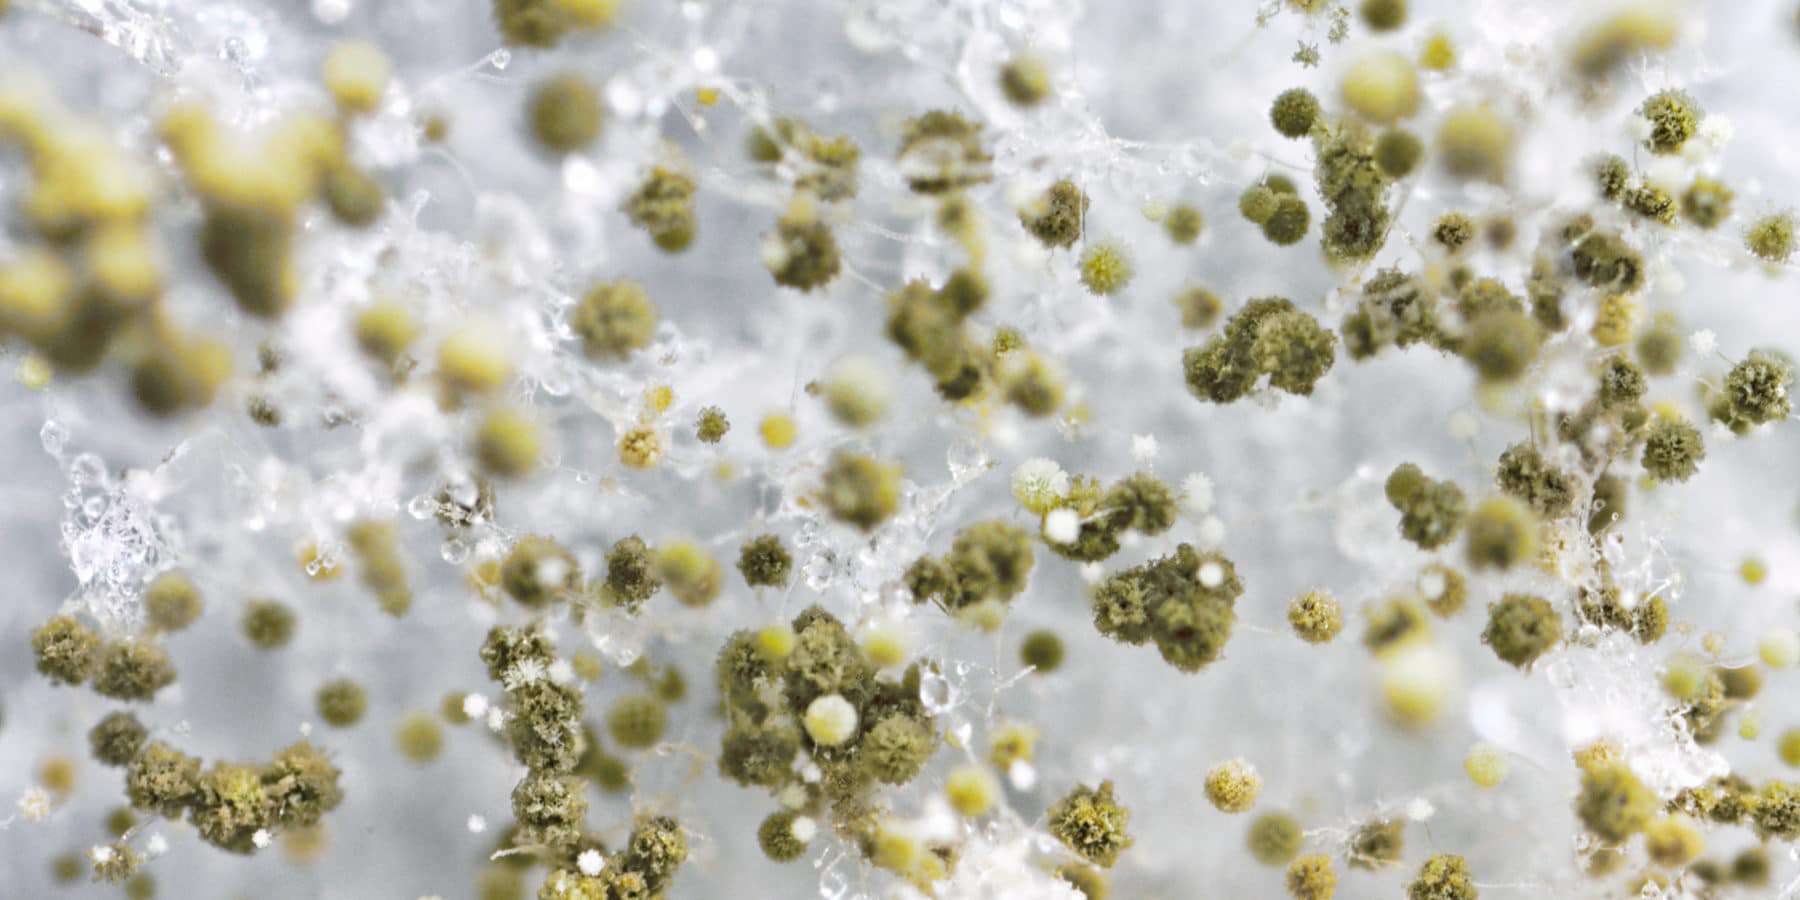 Macro photography of fuzzy mold spores